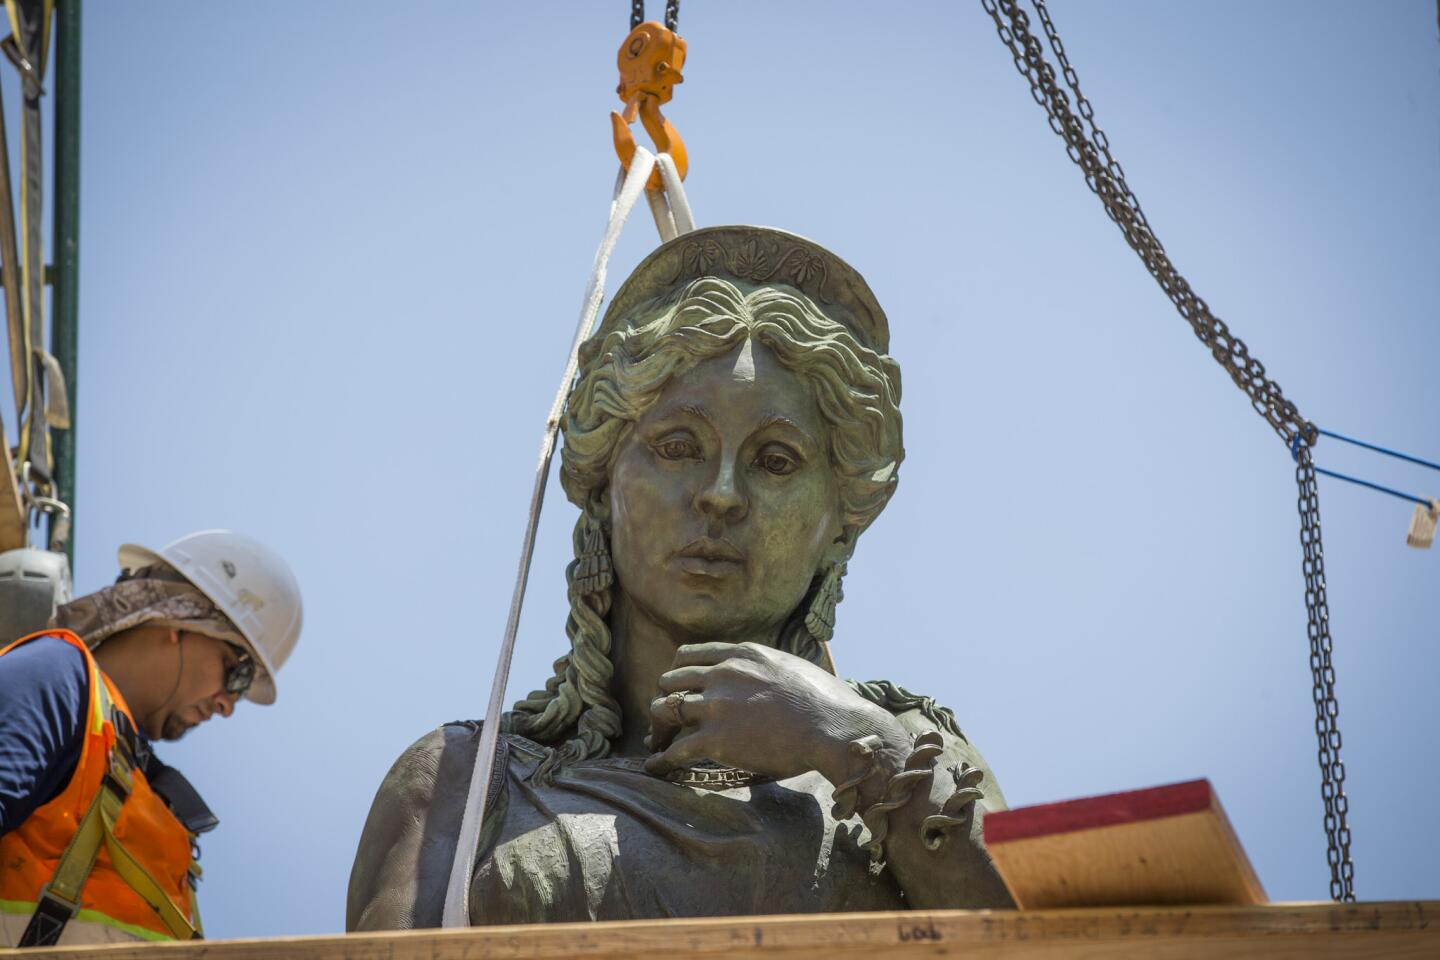 Hecuba, queen of Troy sculpture unveiled